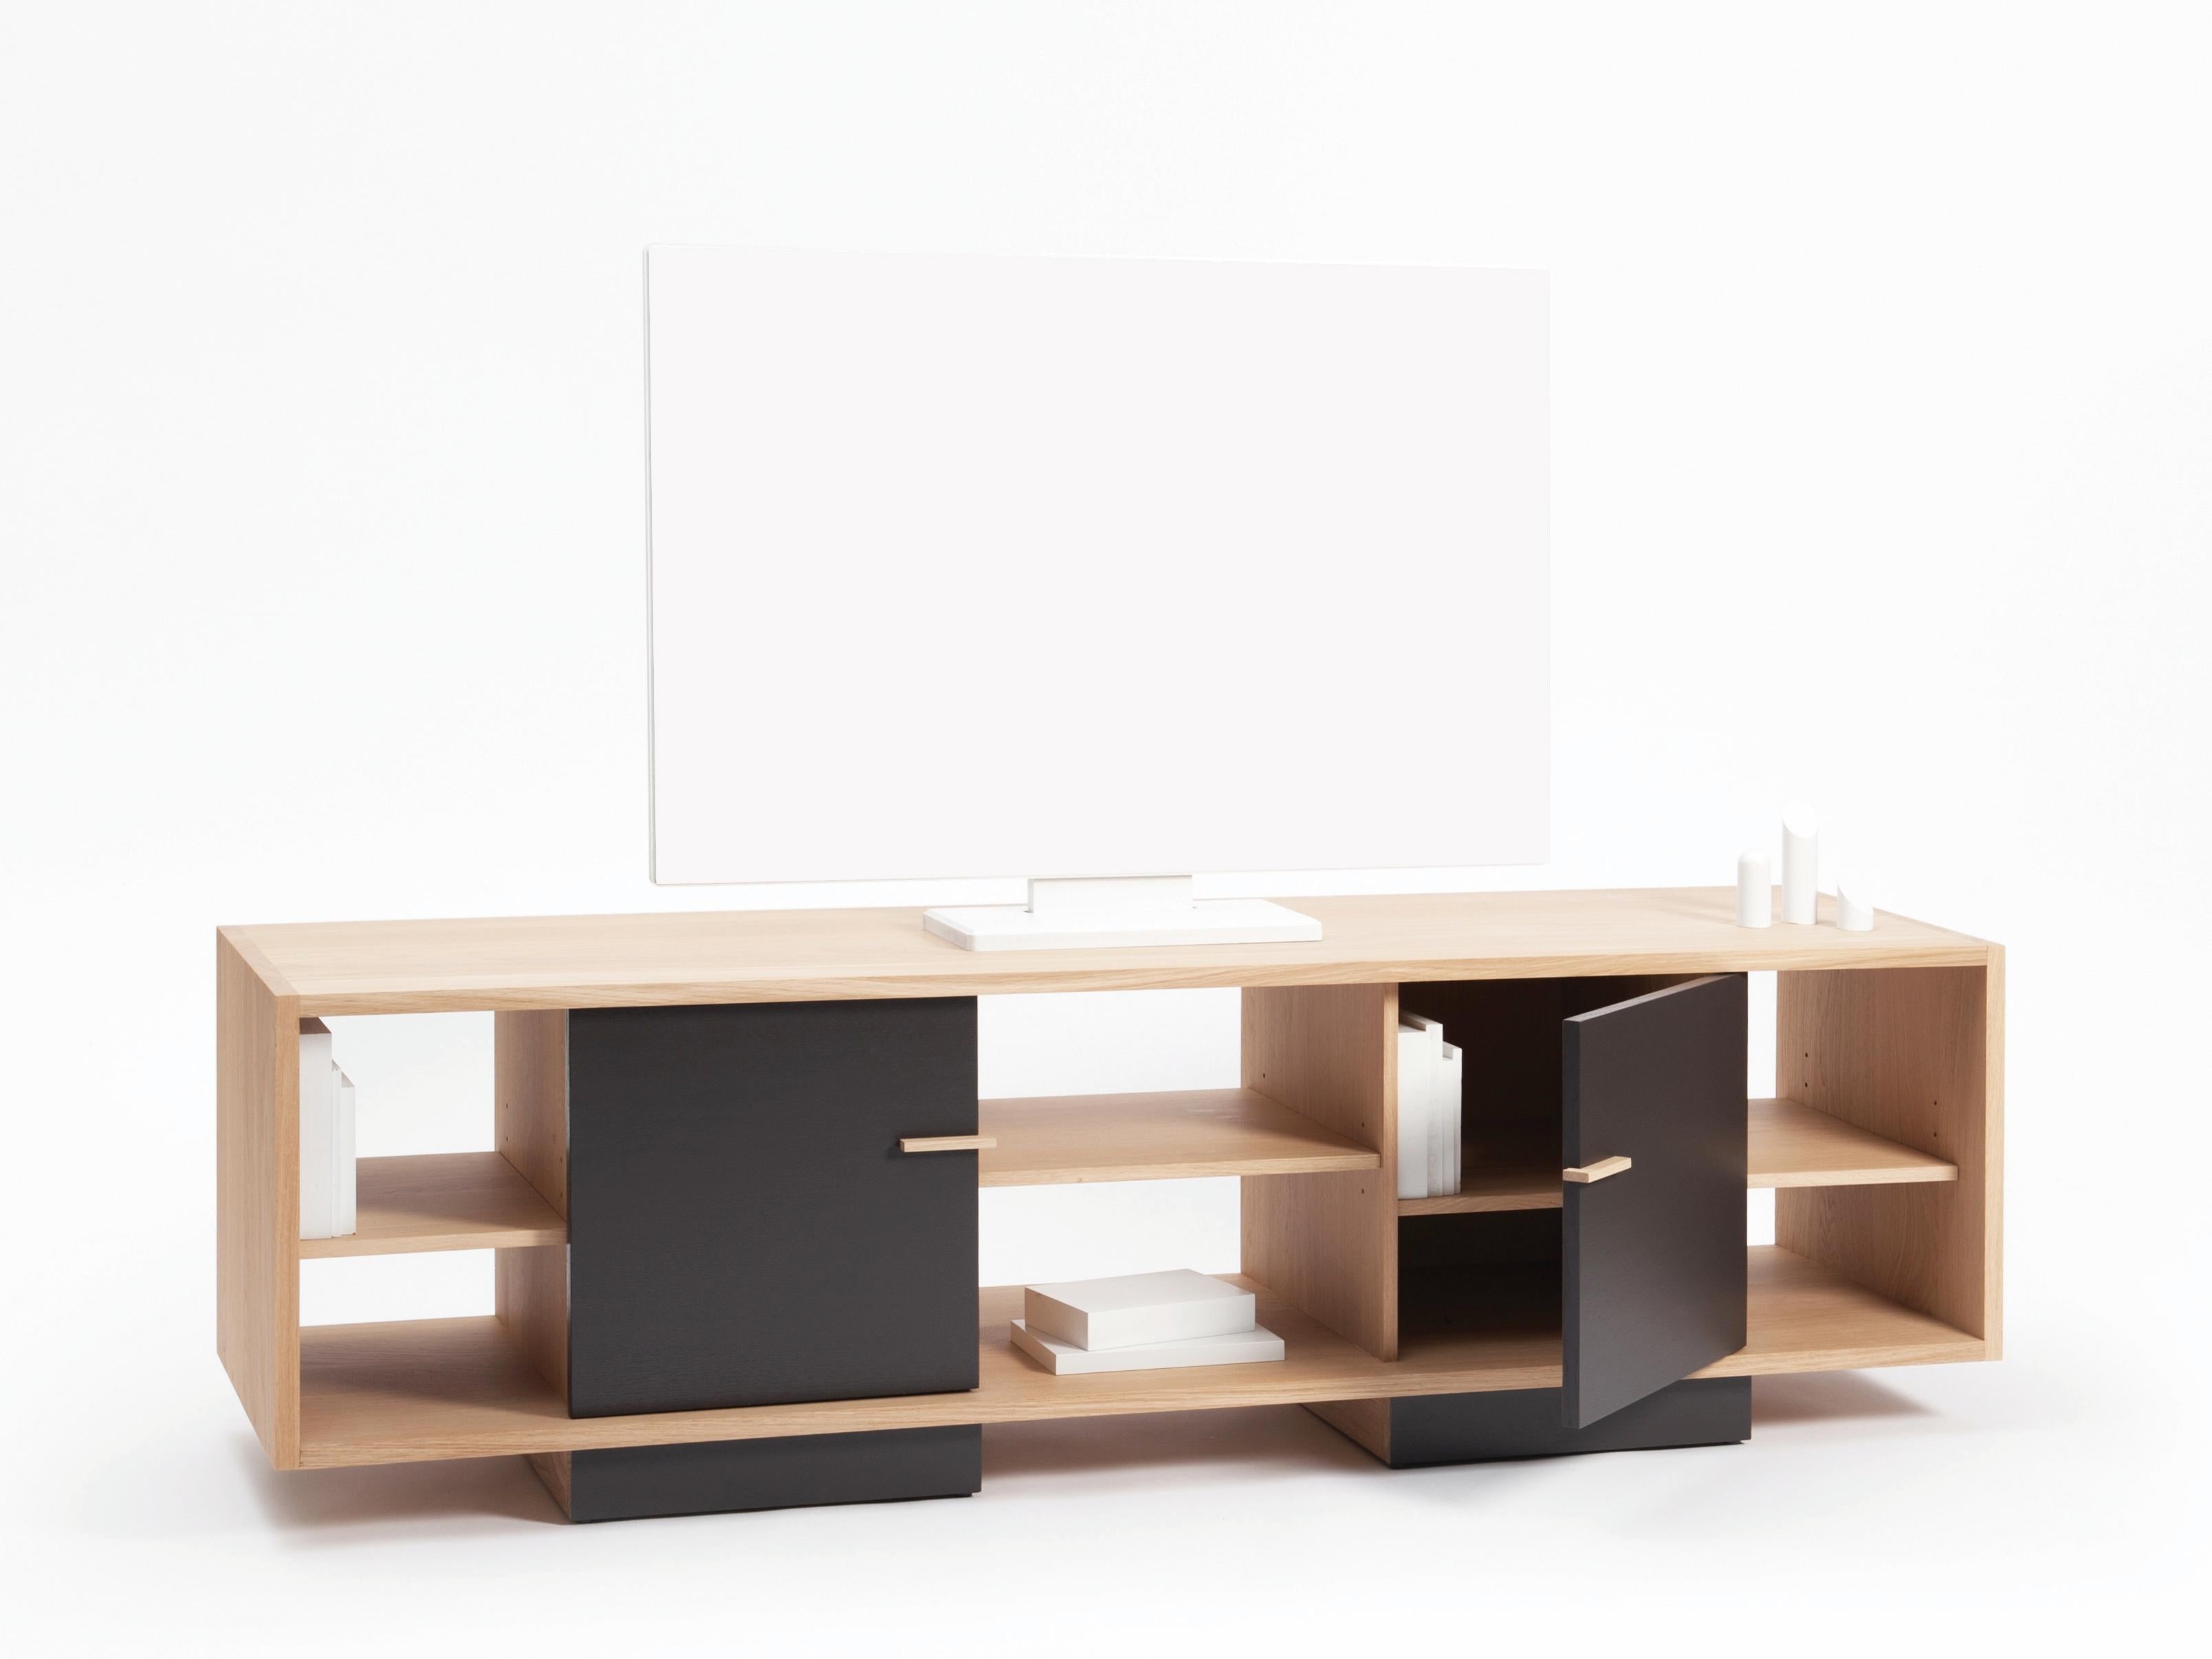 Simple et élégant, le meuble TV ITA s'inspire du minimalisme japonais. Sa longueur (1,64m), ses 2 portes et ses 5 étagères réglables offriront beaucoup d'espace et de rangement caché pour le matériel multimédia. Sur roulettes, il est donc facile à